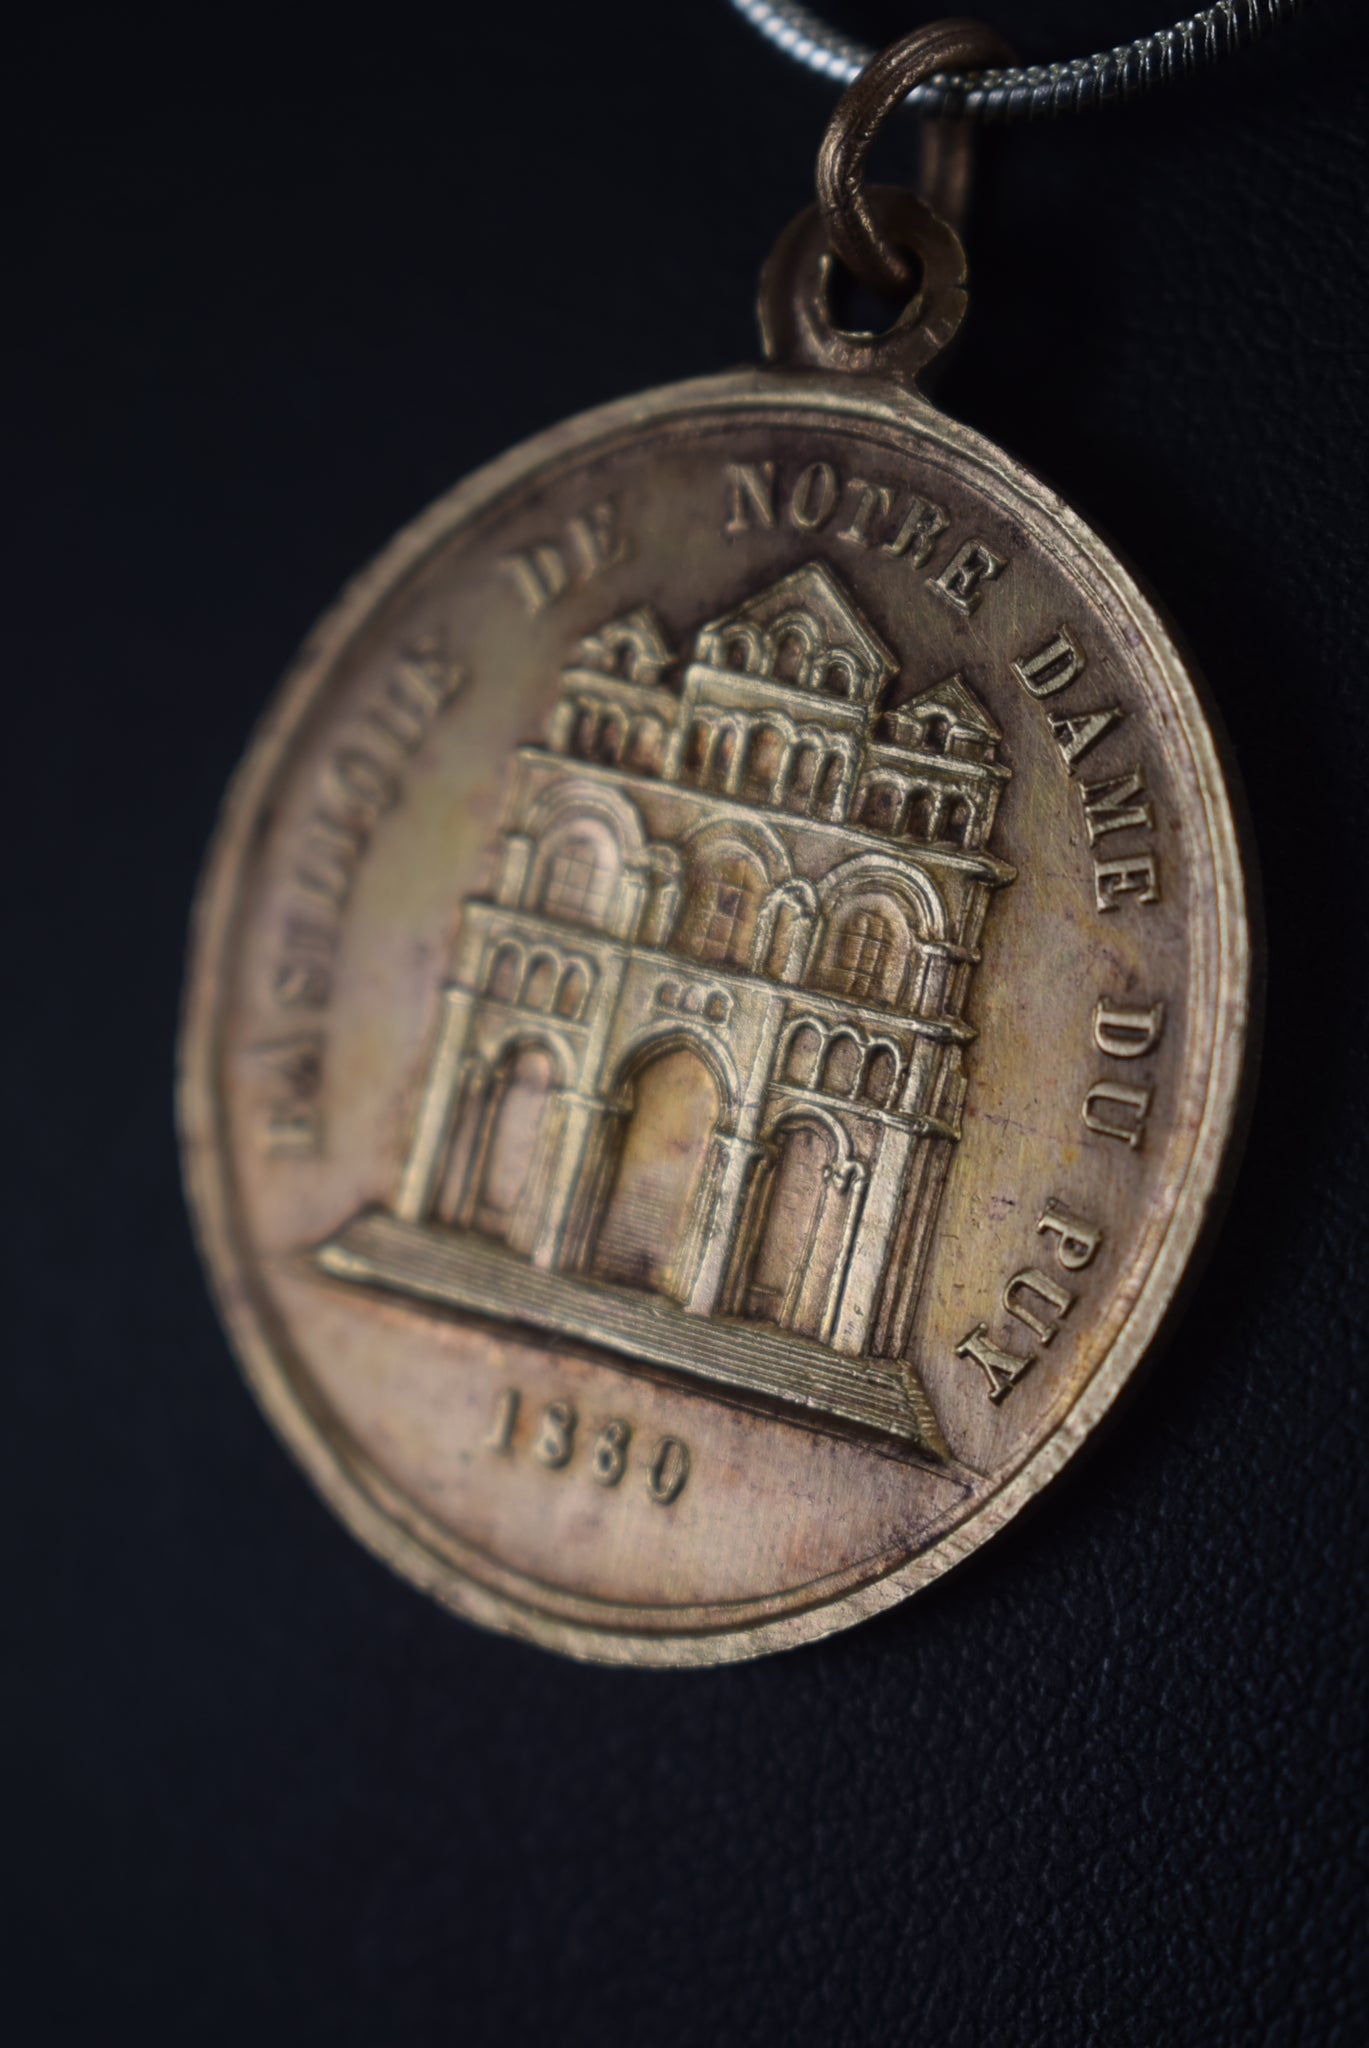 ND de France Medal 1880 - Charmantiques